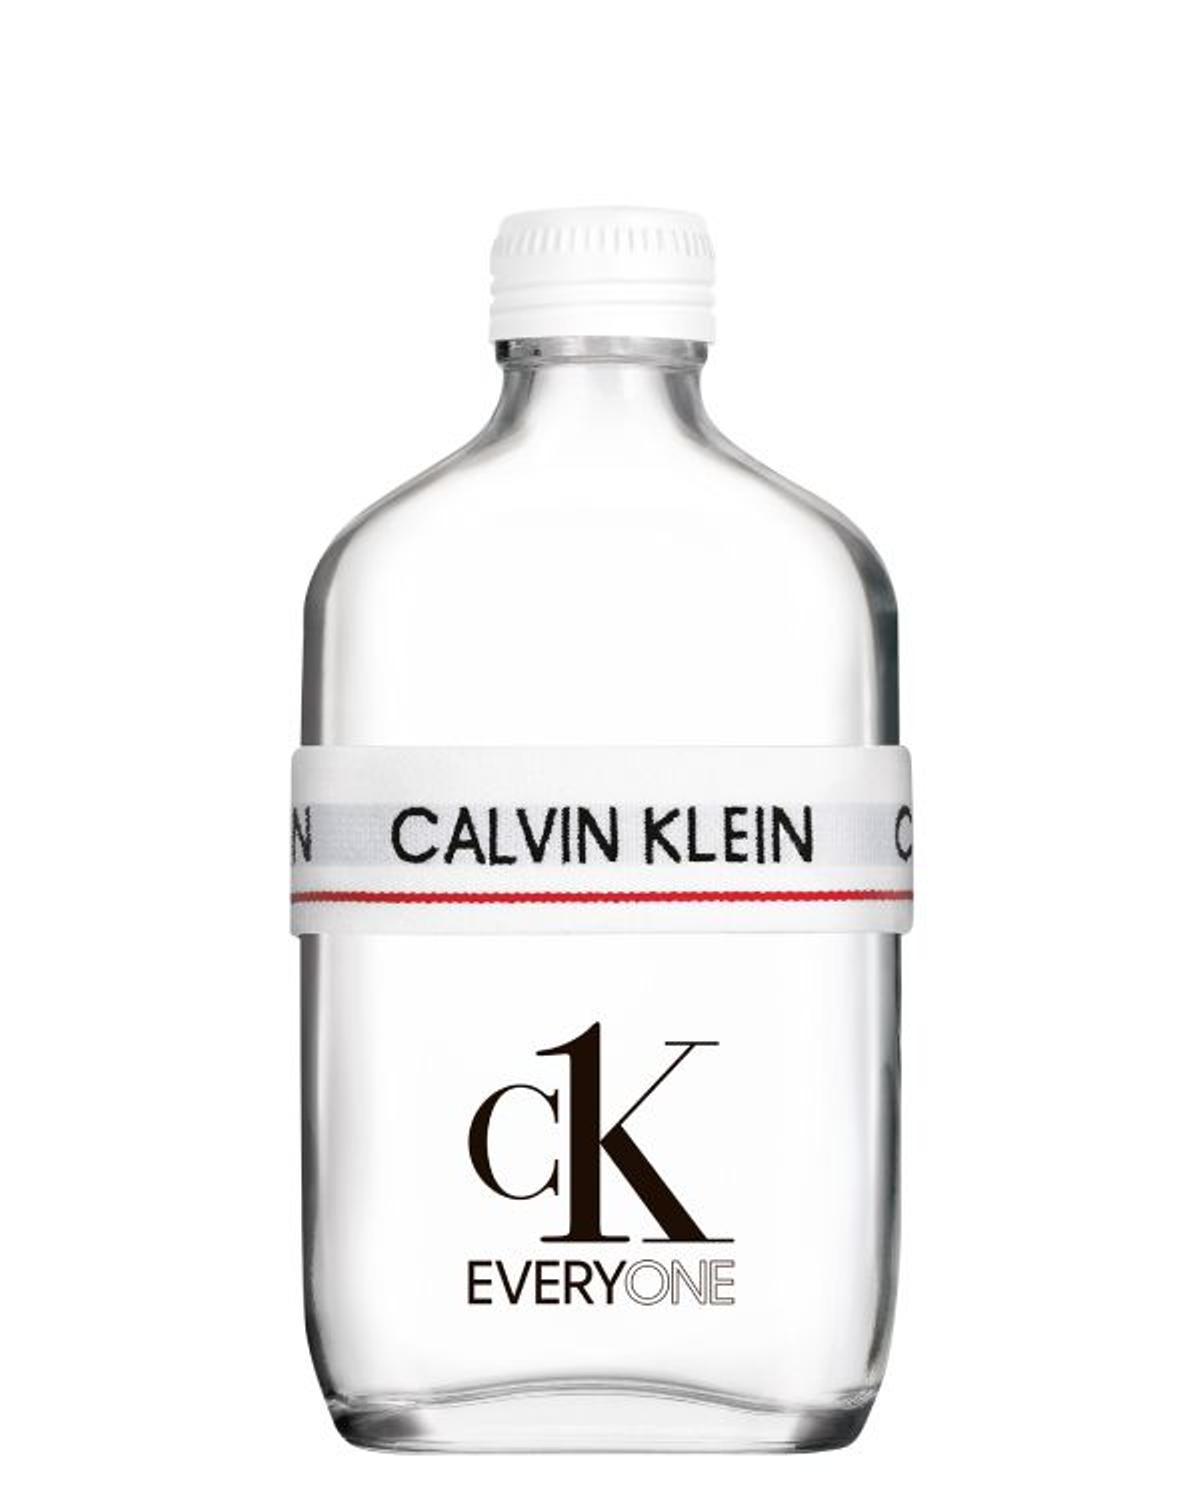 CK Everyone, de Calvin Klein